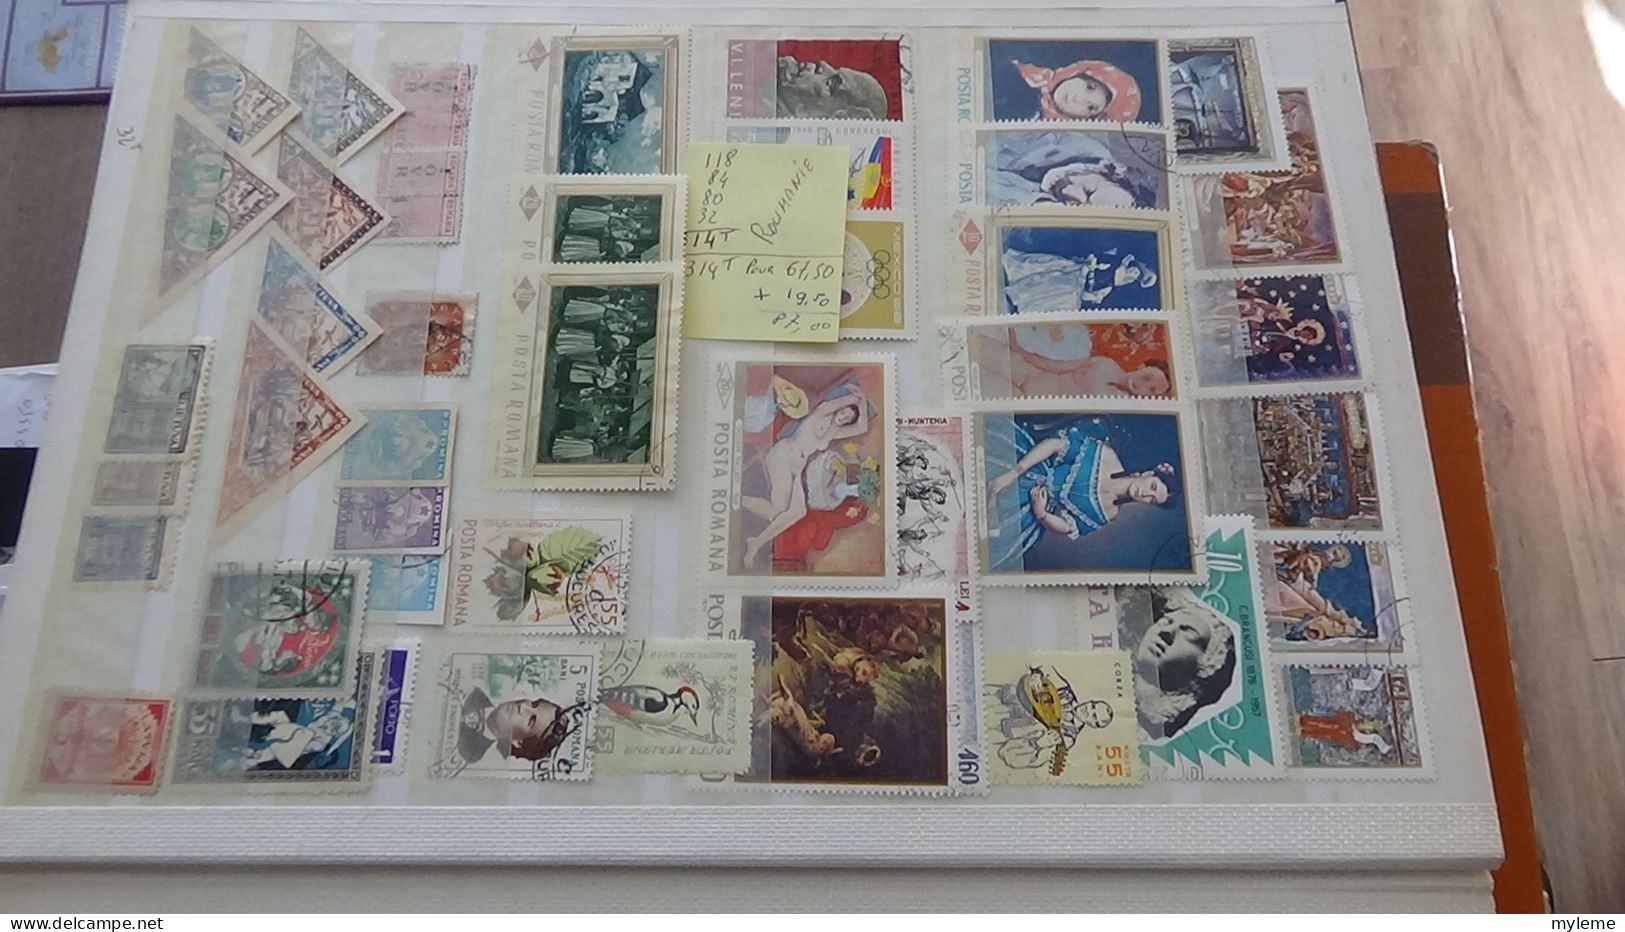 Berlin, belle collection de timbres oblitérés dans un classeur (album)